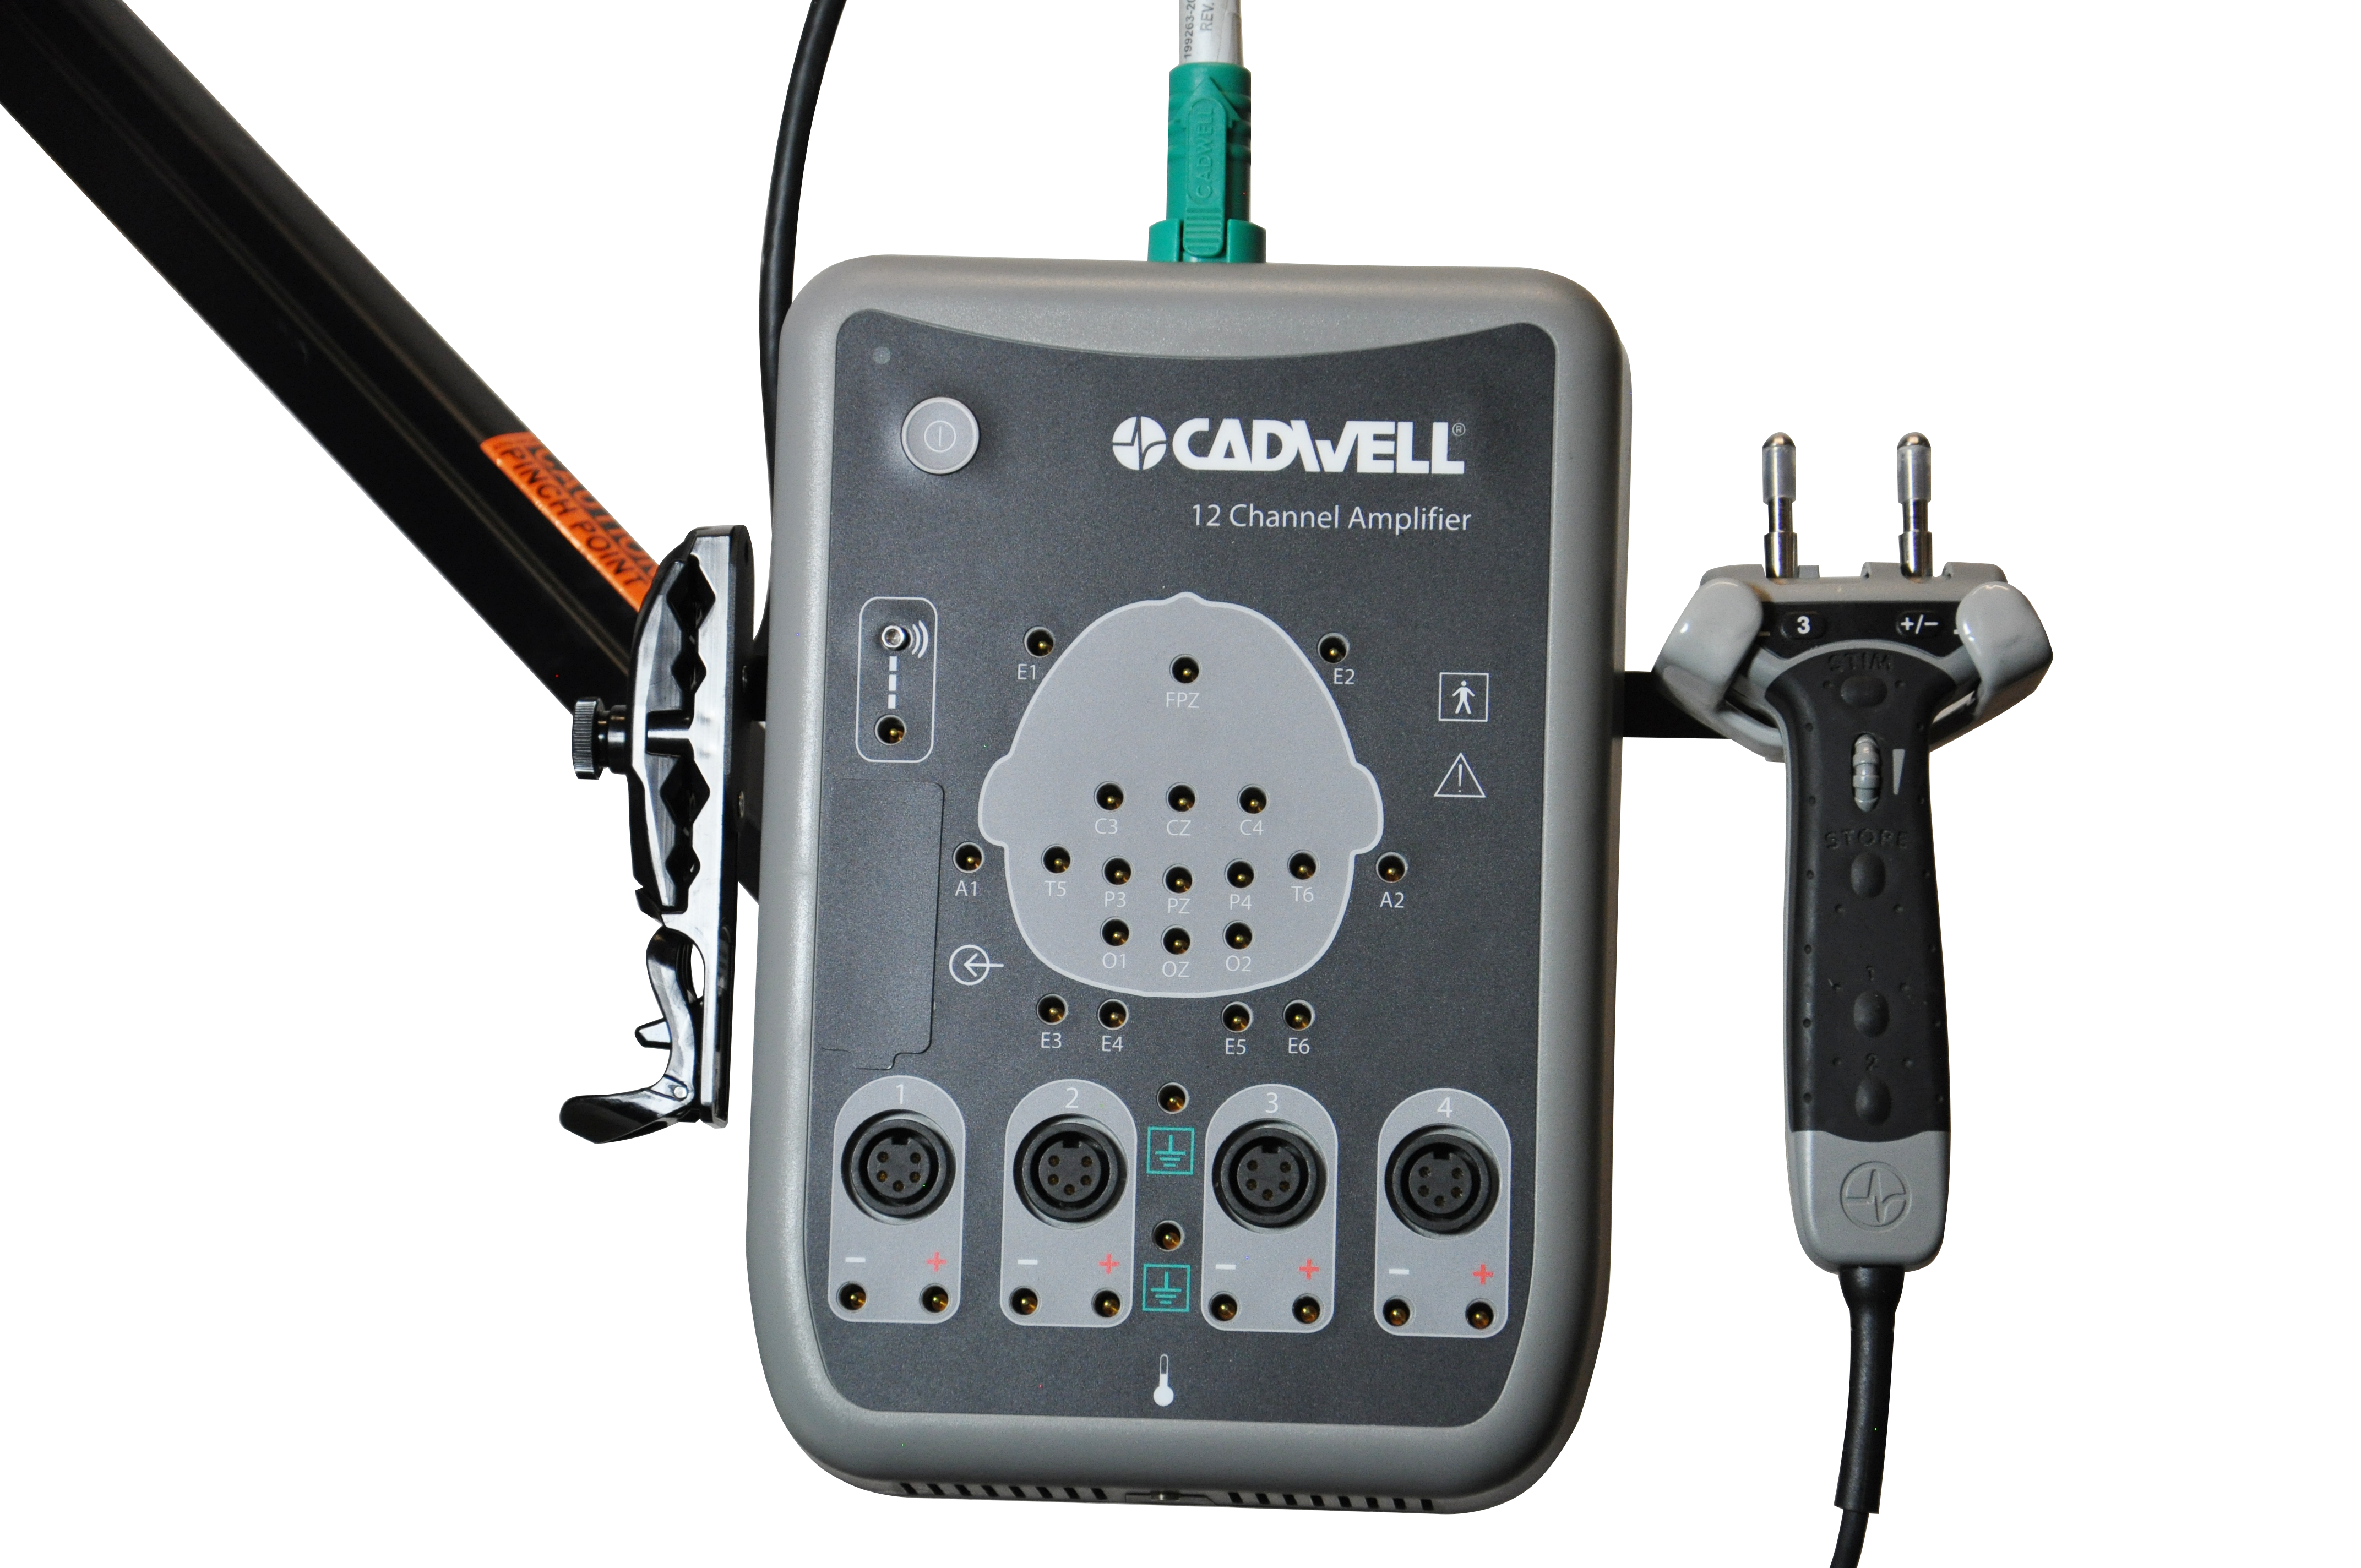 Cadwell-EMG-sierra-3-12-channel-amplifier-with-stimulator